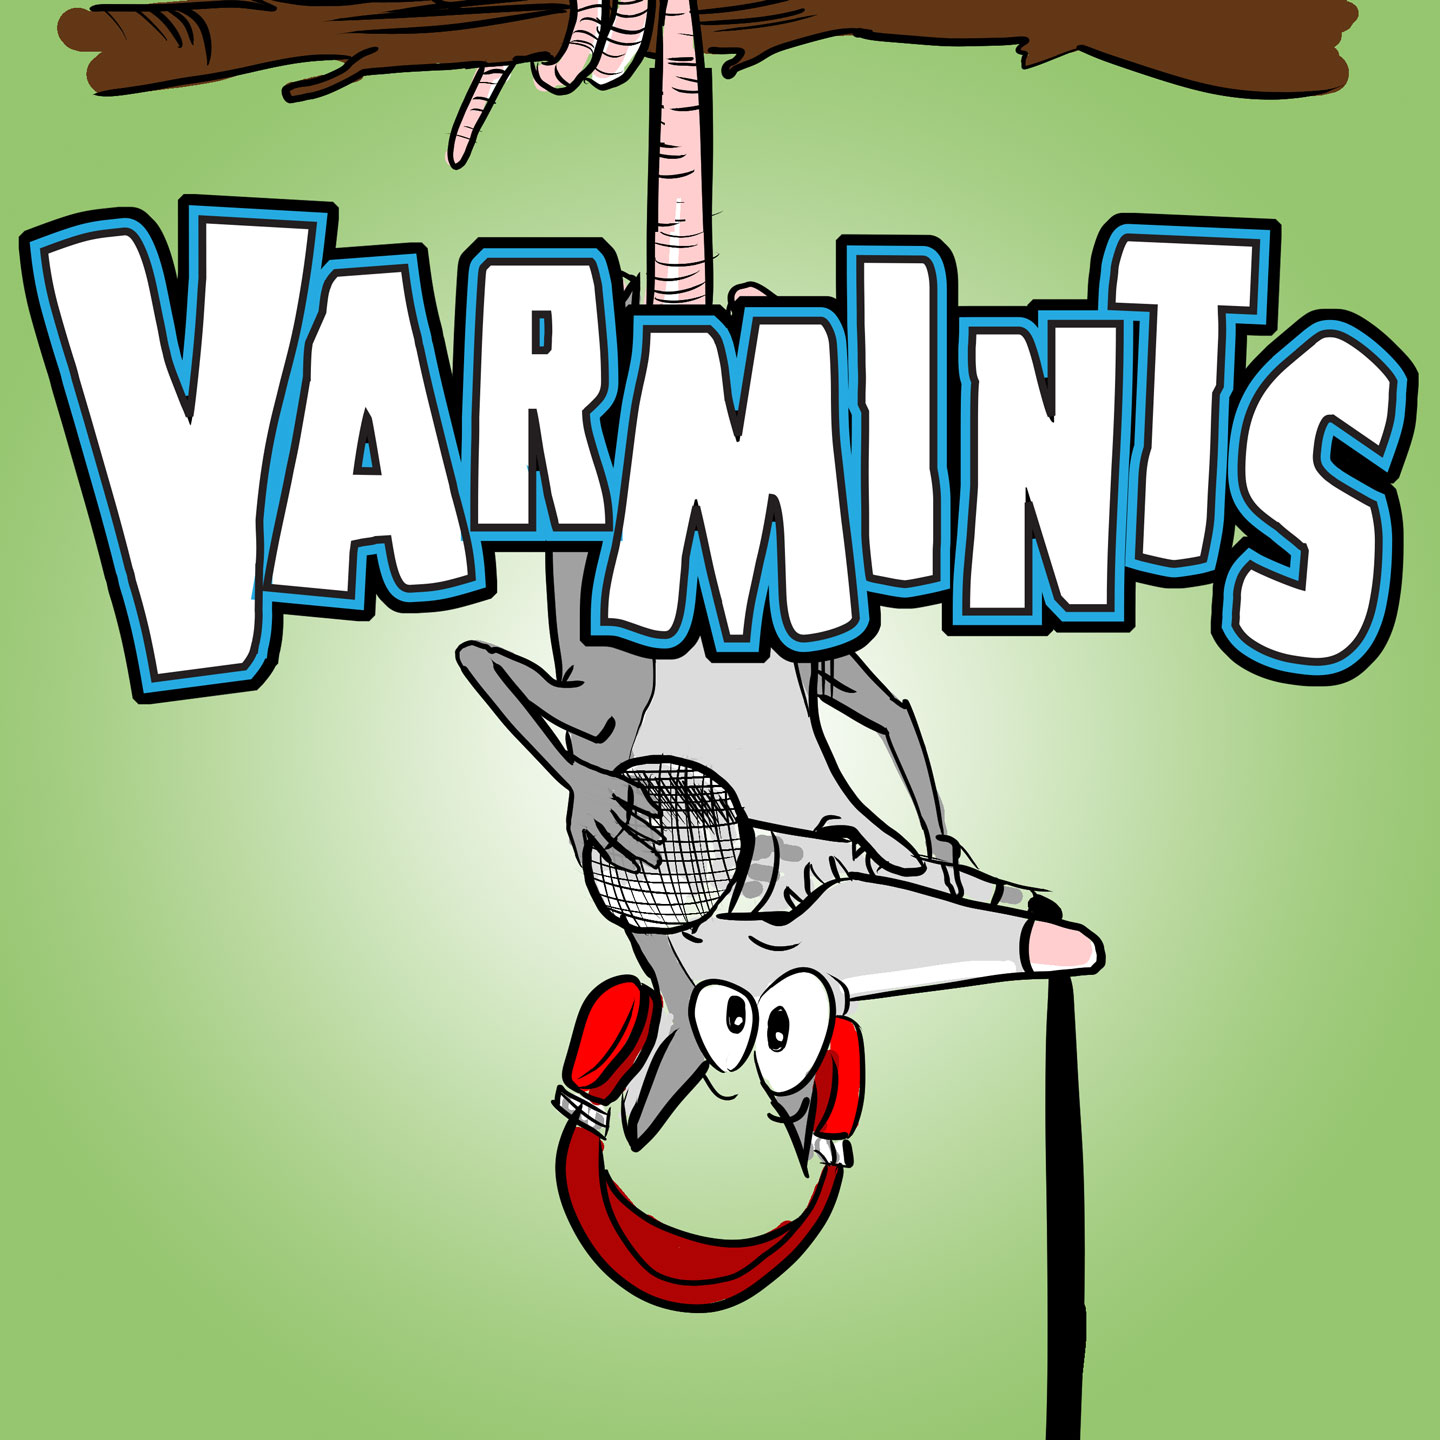 Varmints 2.0 ”What’s Your Deal” with Derek ”Moss” Schmeh